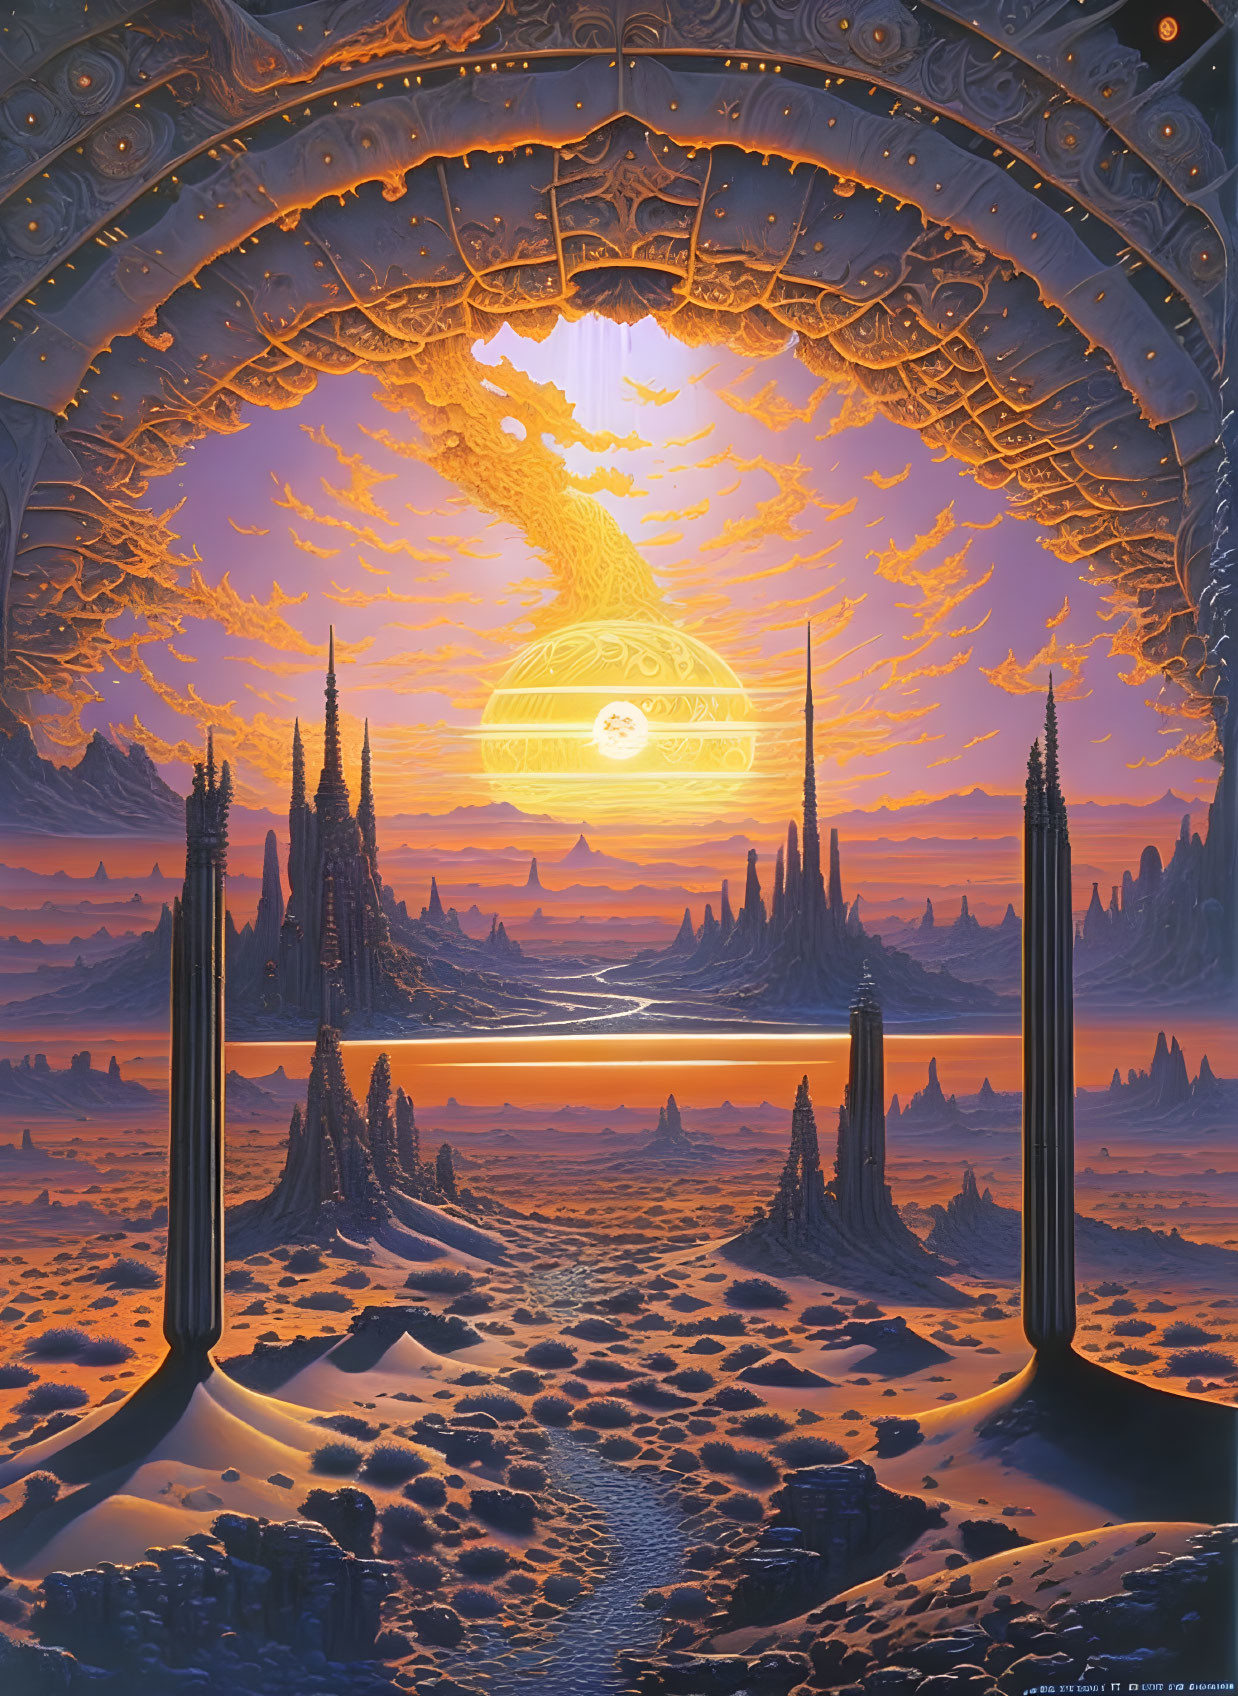 Sunrise on an Alien Desert World